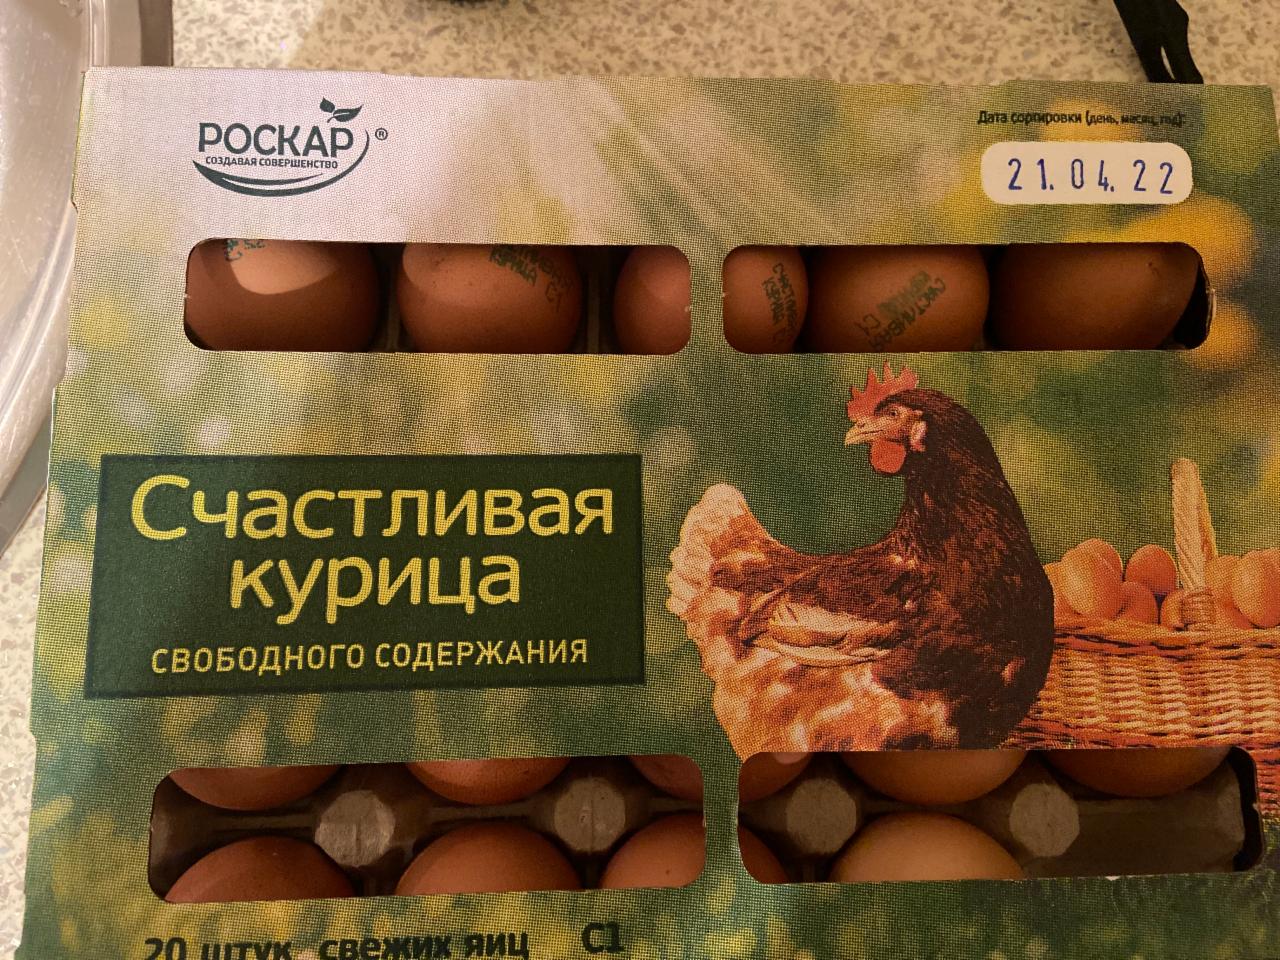 Фото - Яйцо куриное Счастливая курица Роскар